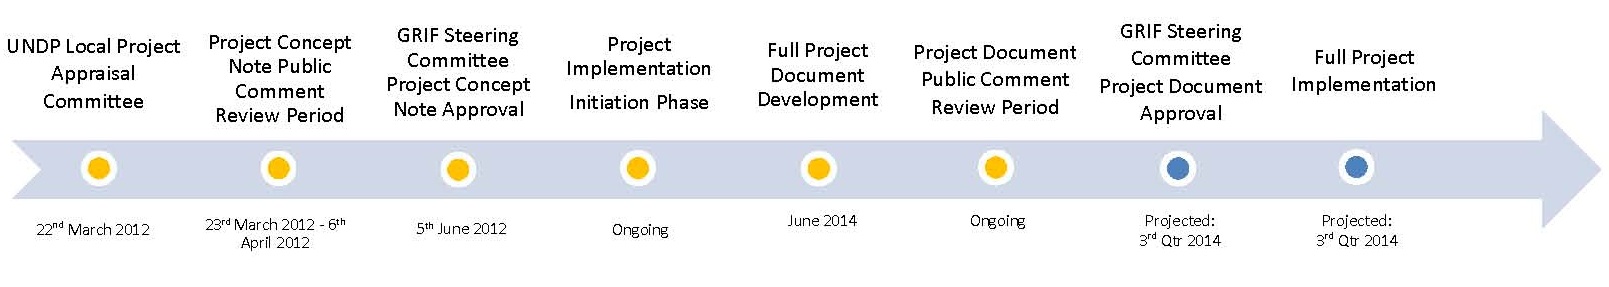 ADF Project Timeline v3 25-06-14